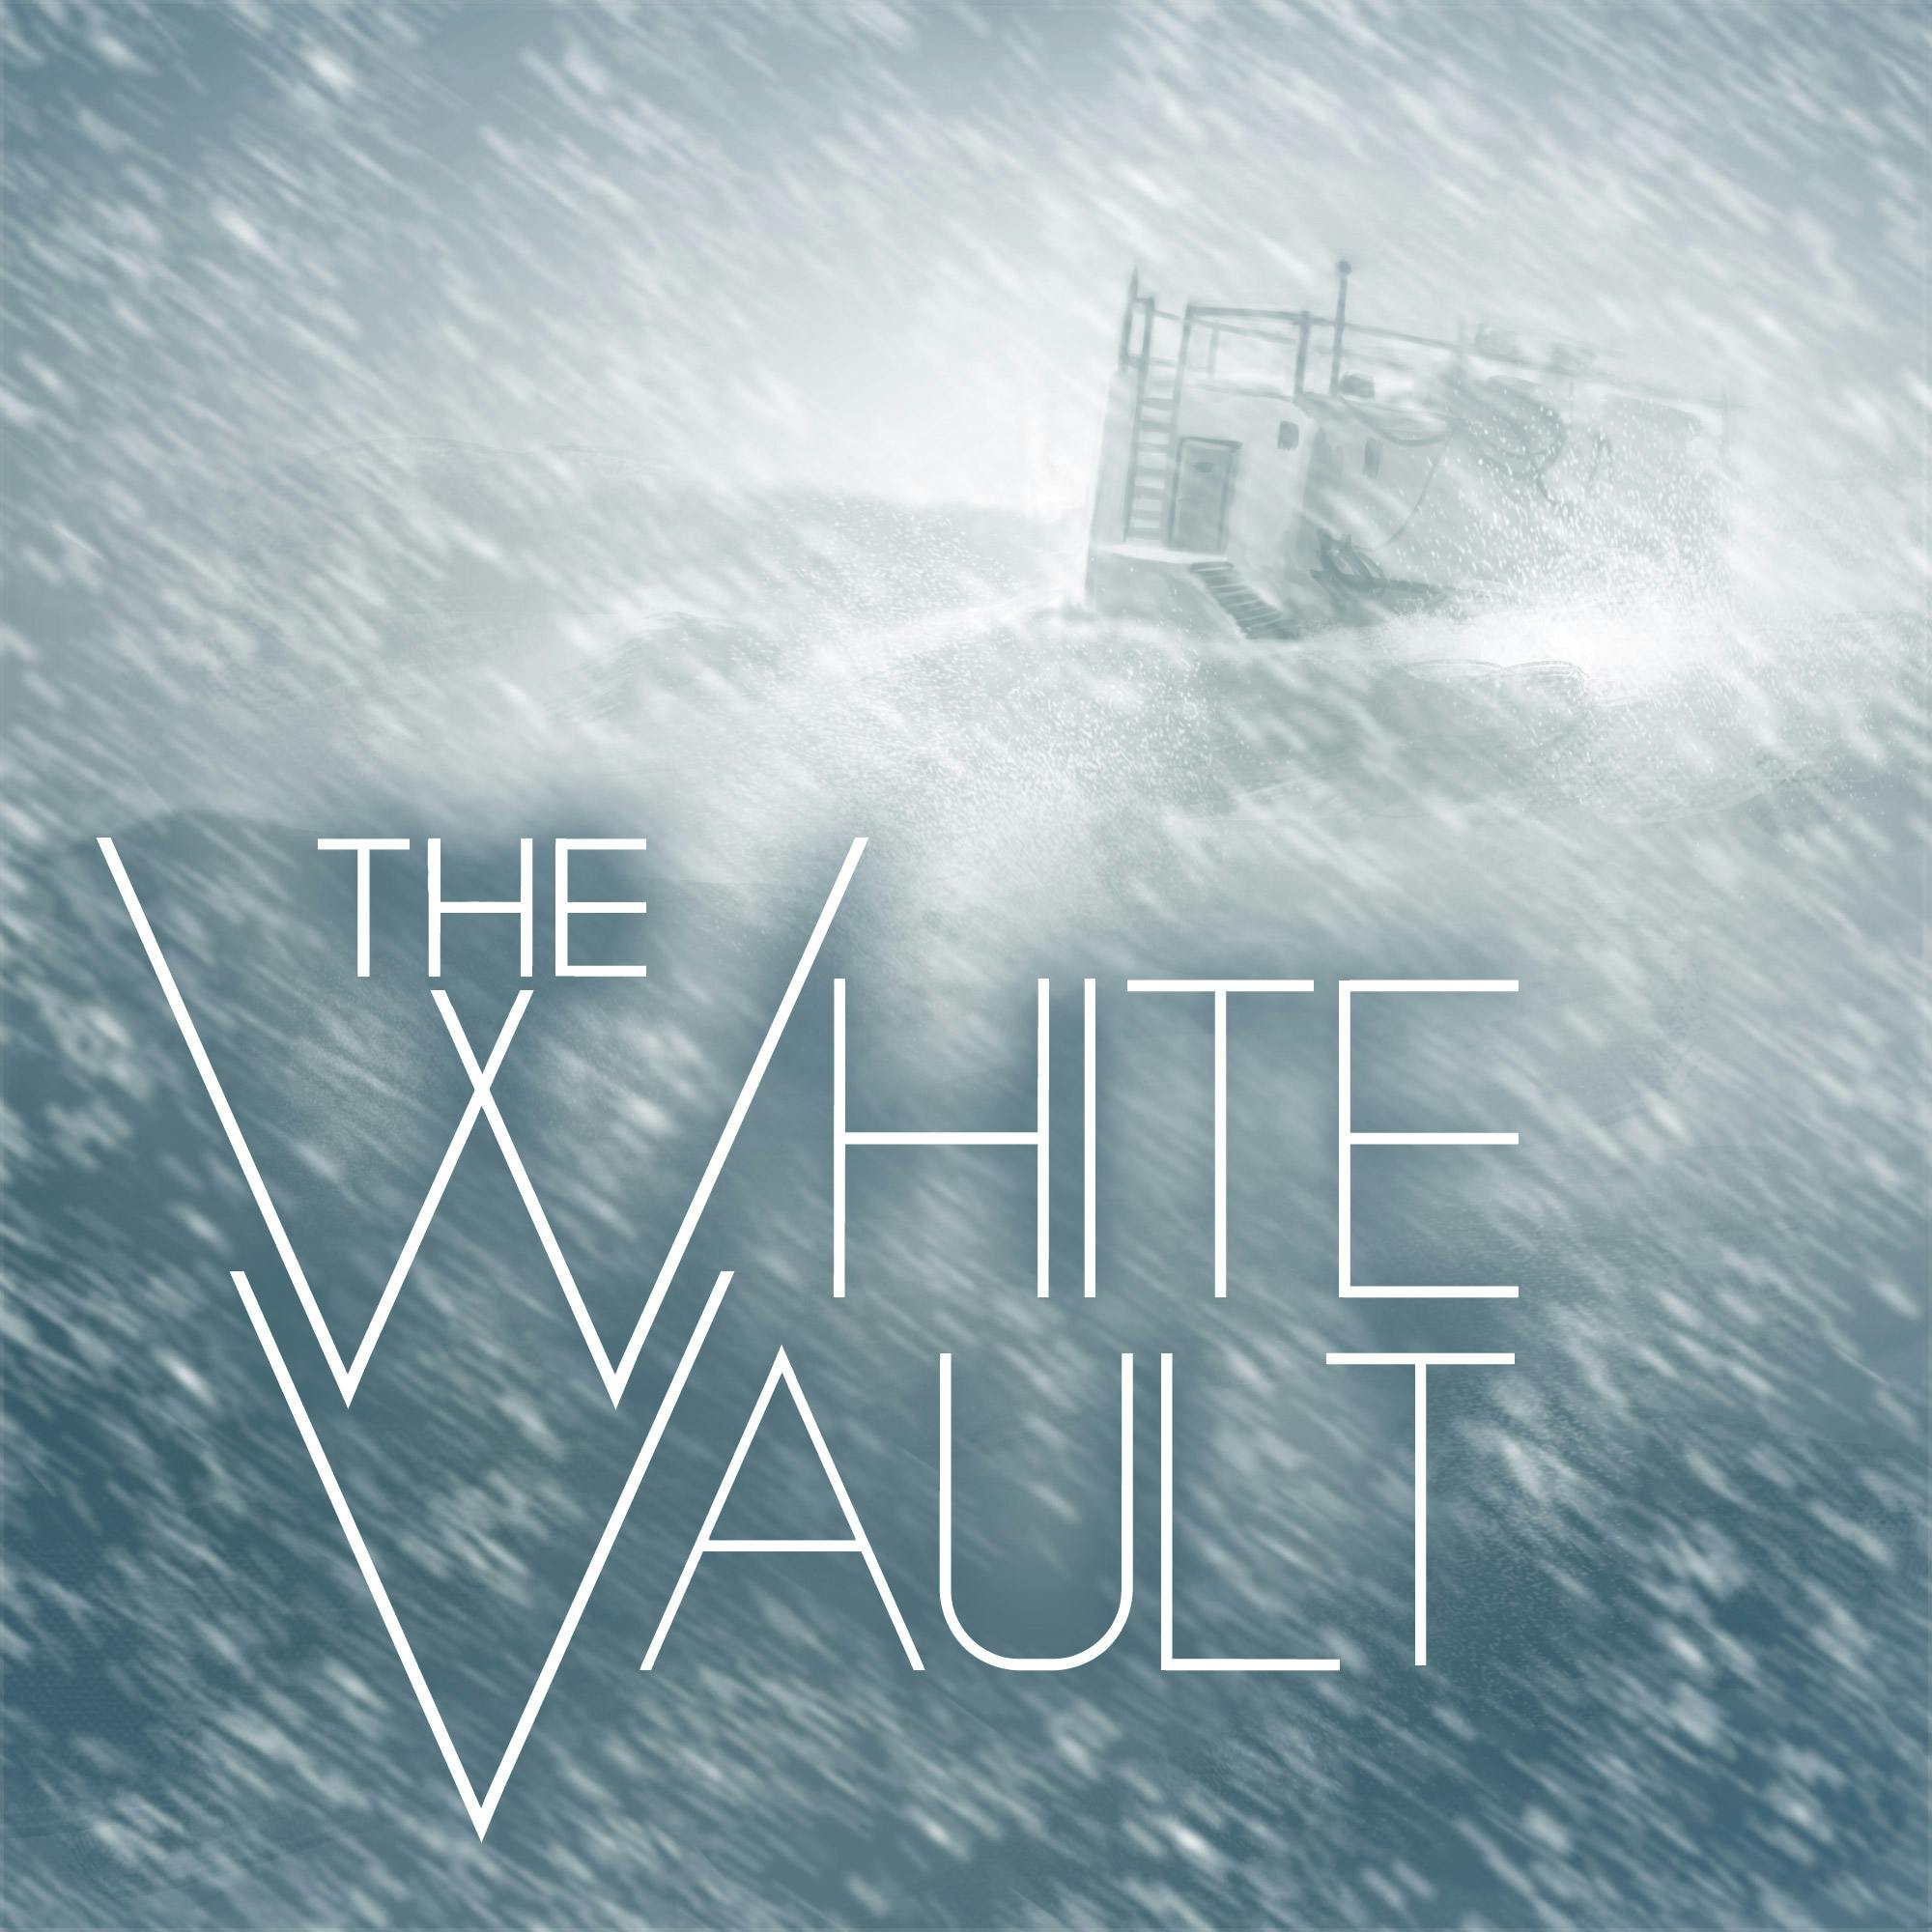 The White Vault podcast